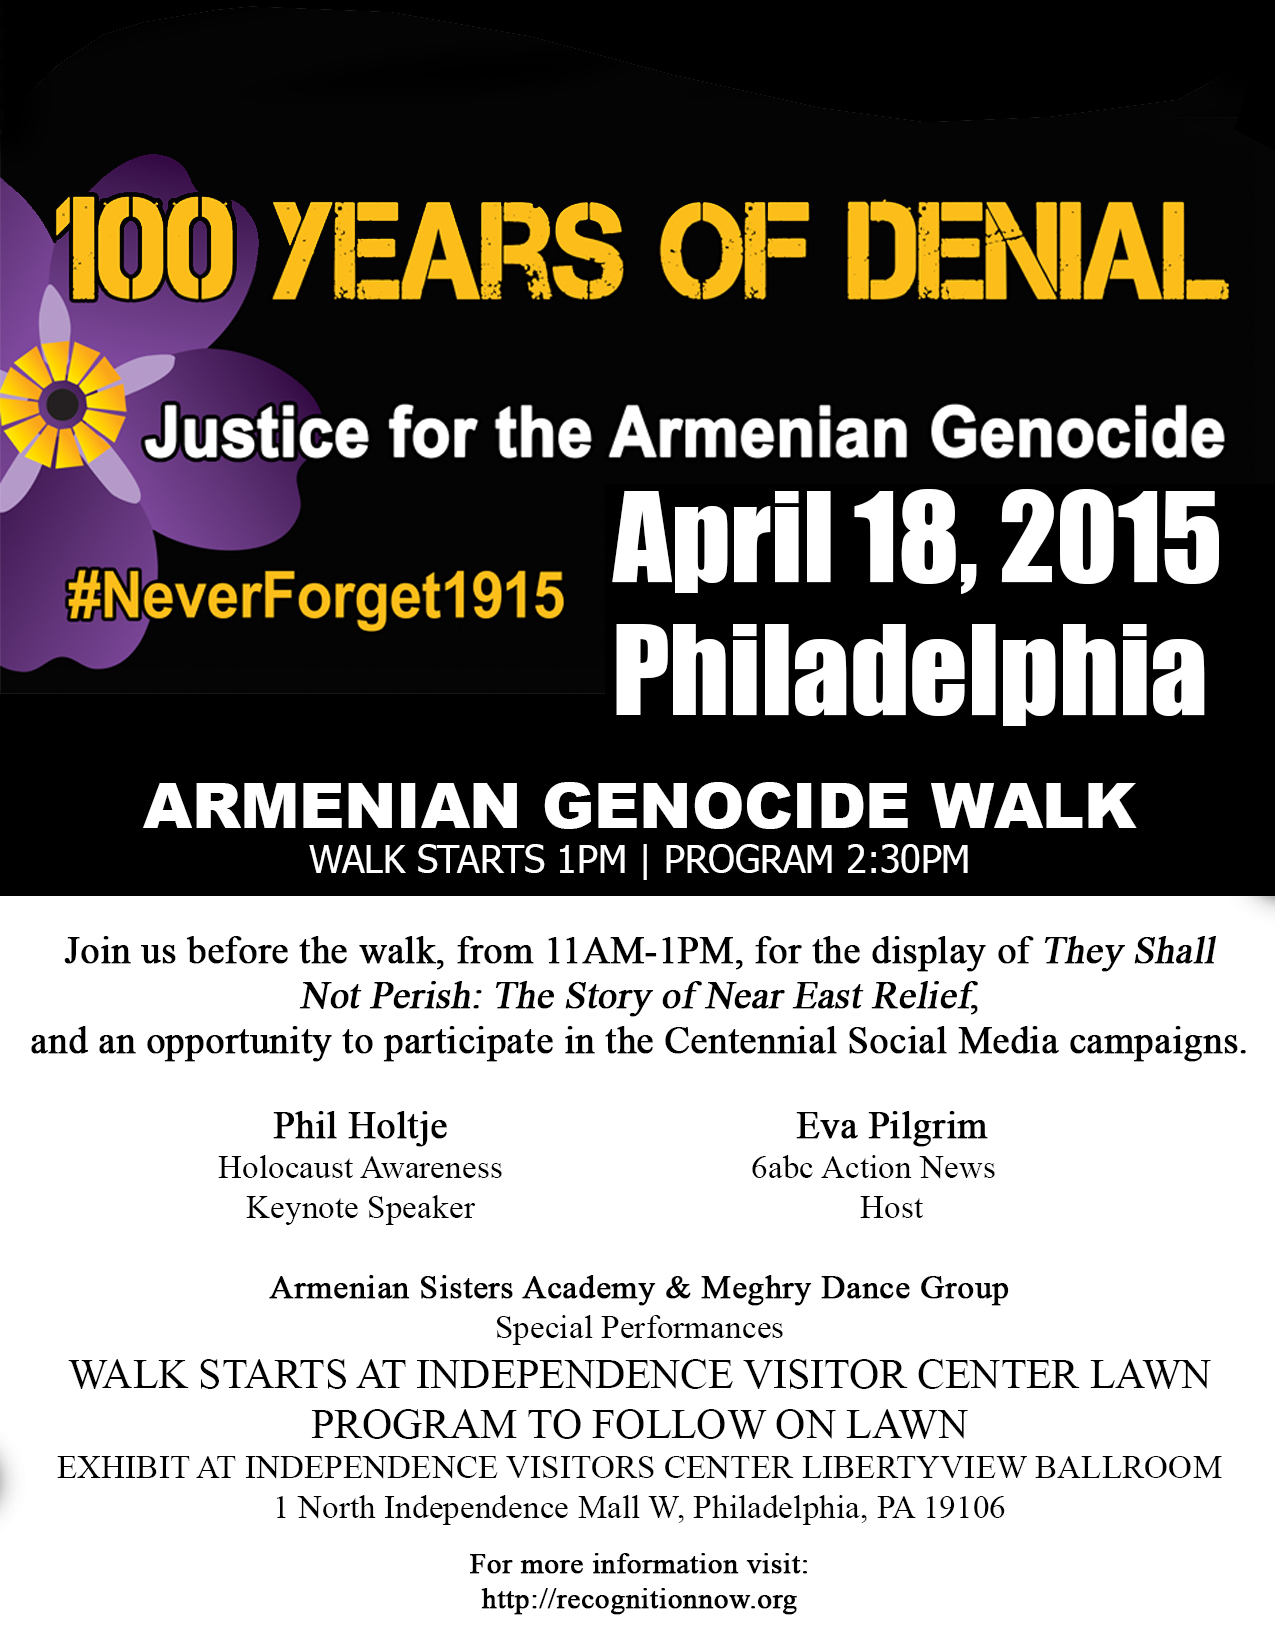 Armenian-Genocide-Walk-4-18-15